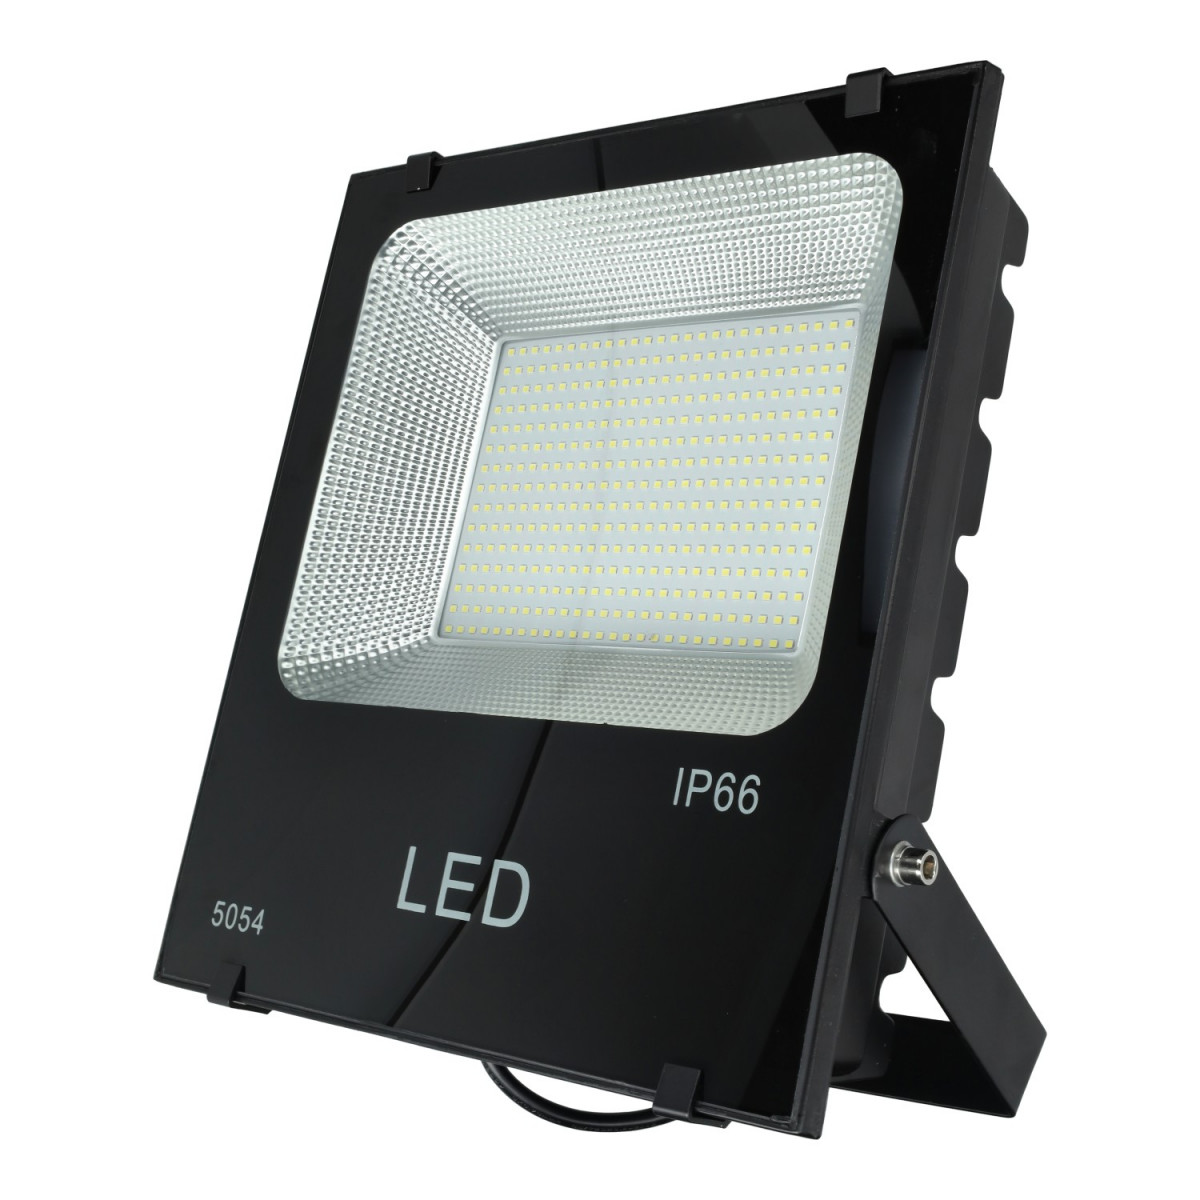 Led-Projektor 150W flach smd, weißes Licht, zum besten Preis